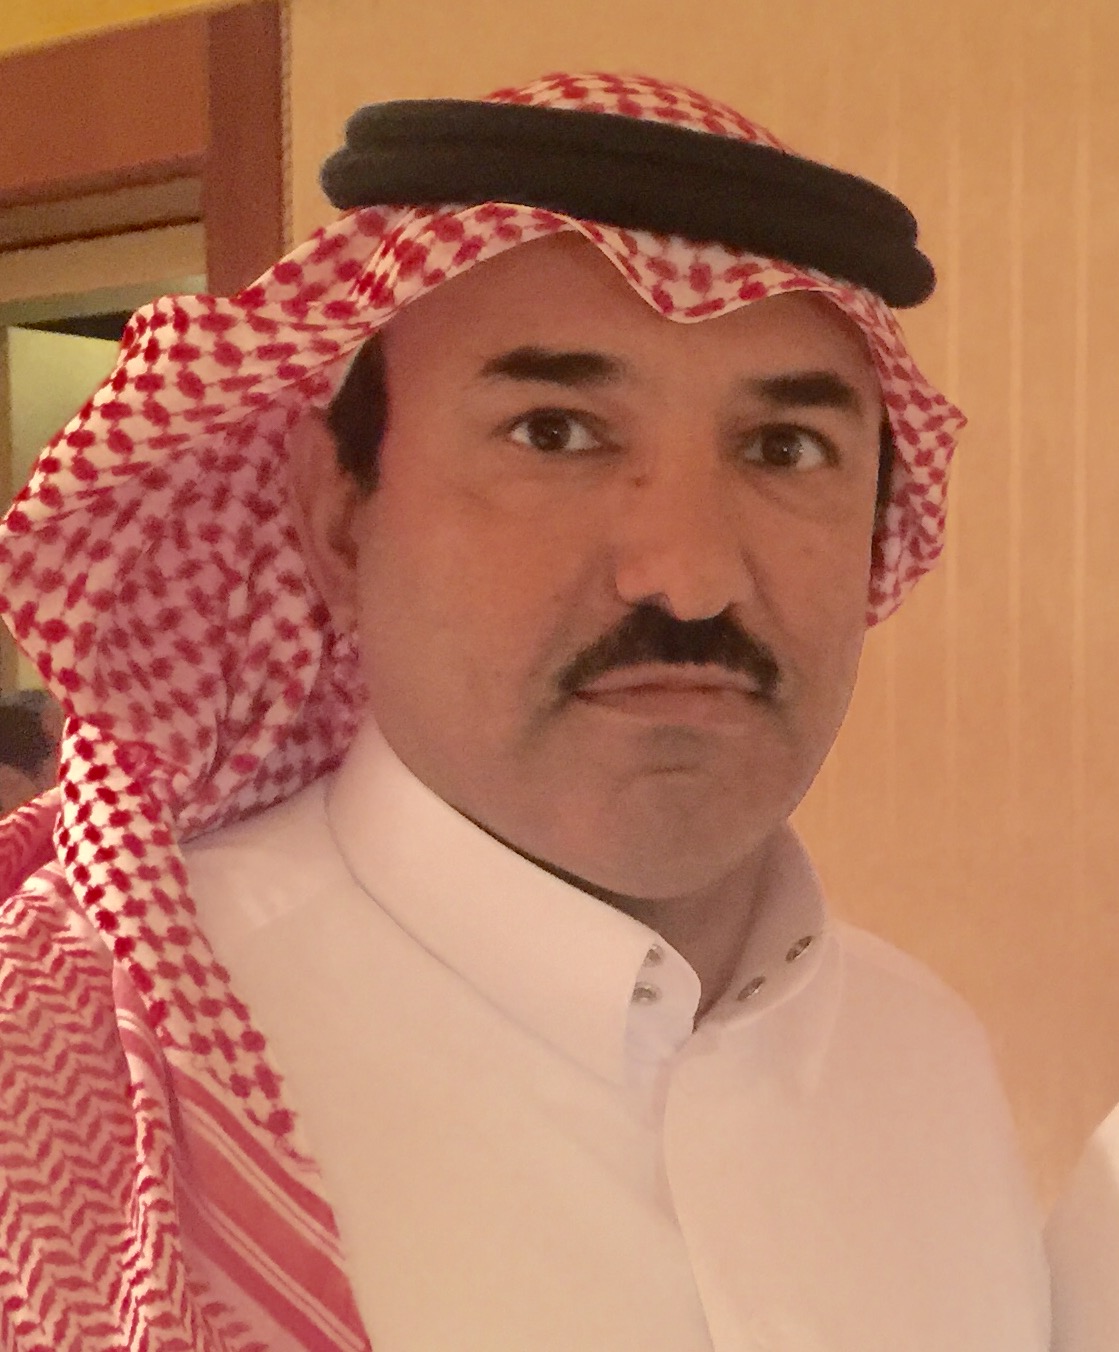 الزميل “آل هطلاء” عضواً بالجمعية السعودية للمرشدين السياحيين